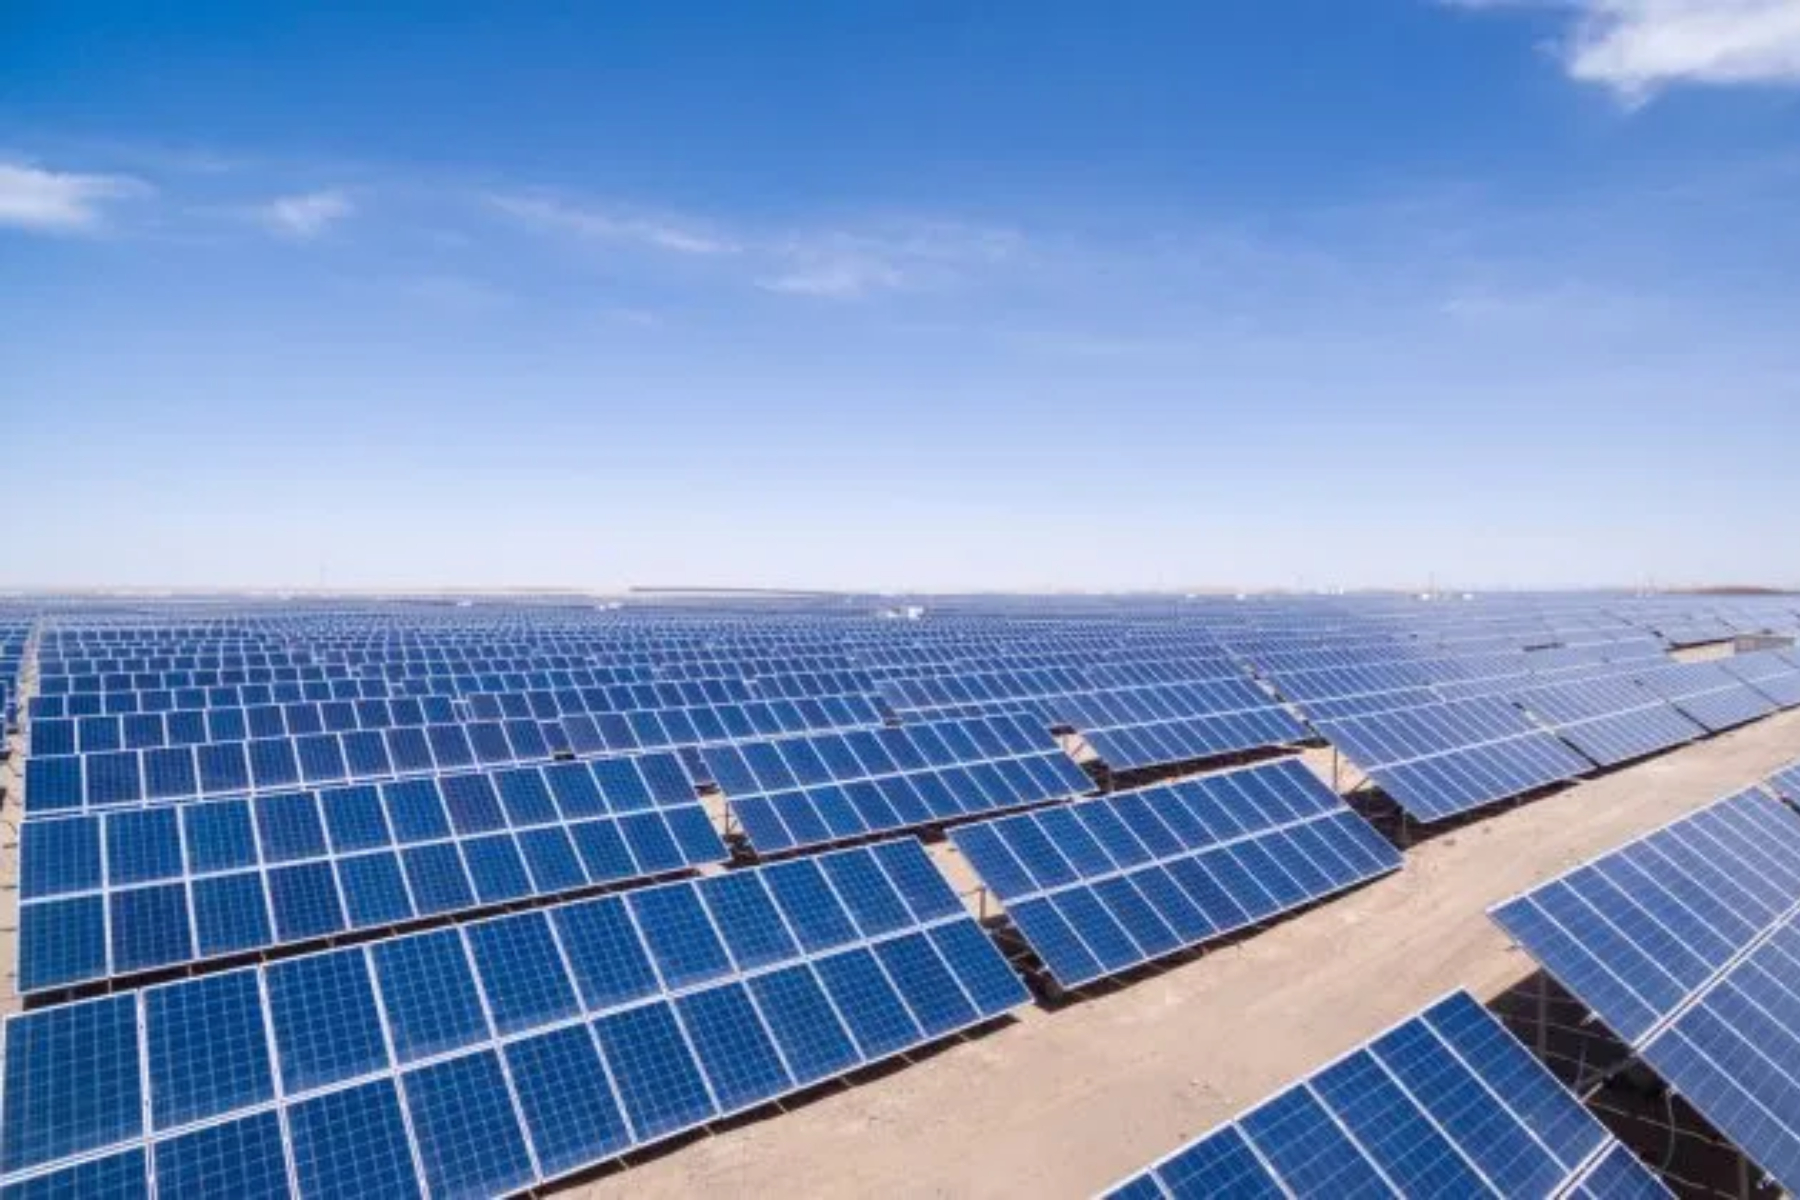 Proyecto fotovoltaico de 46 MW a construirse en Copiapó ingresa a calificación ambiental